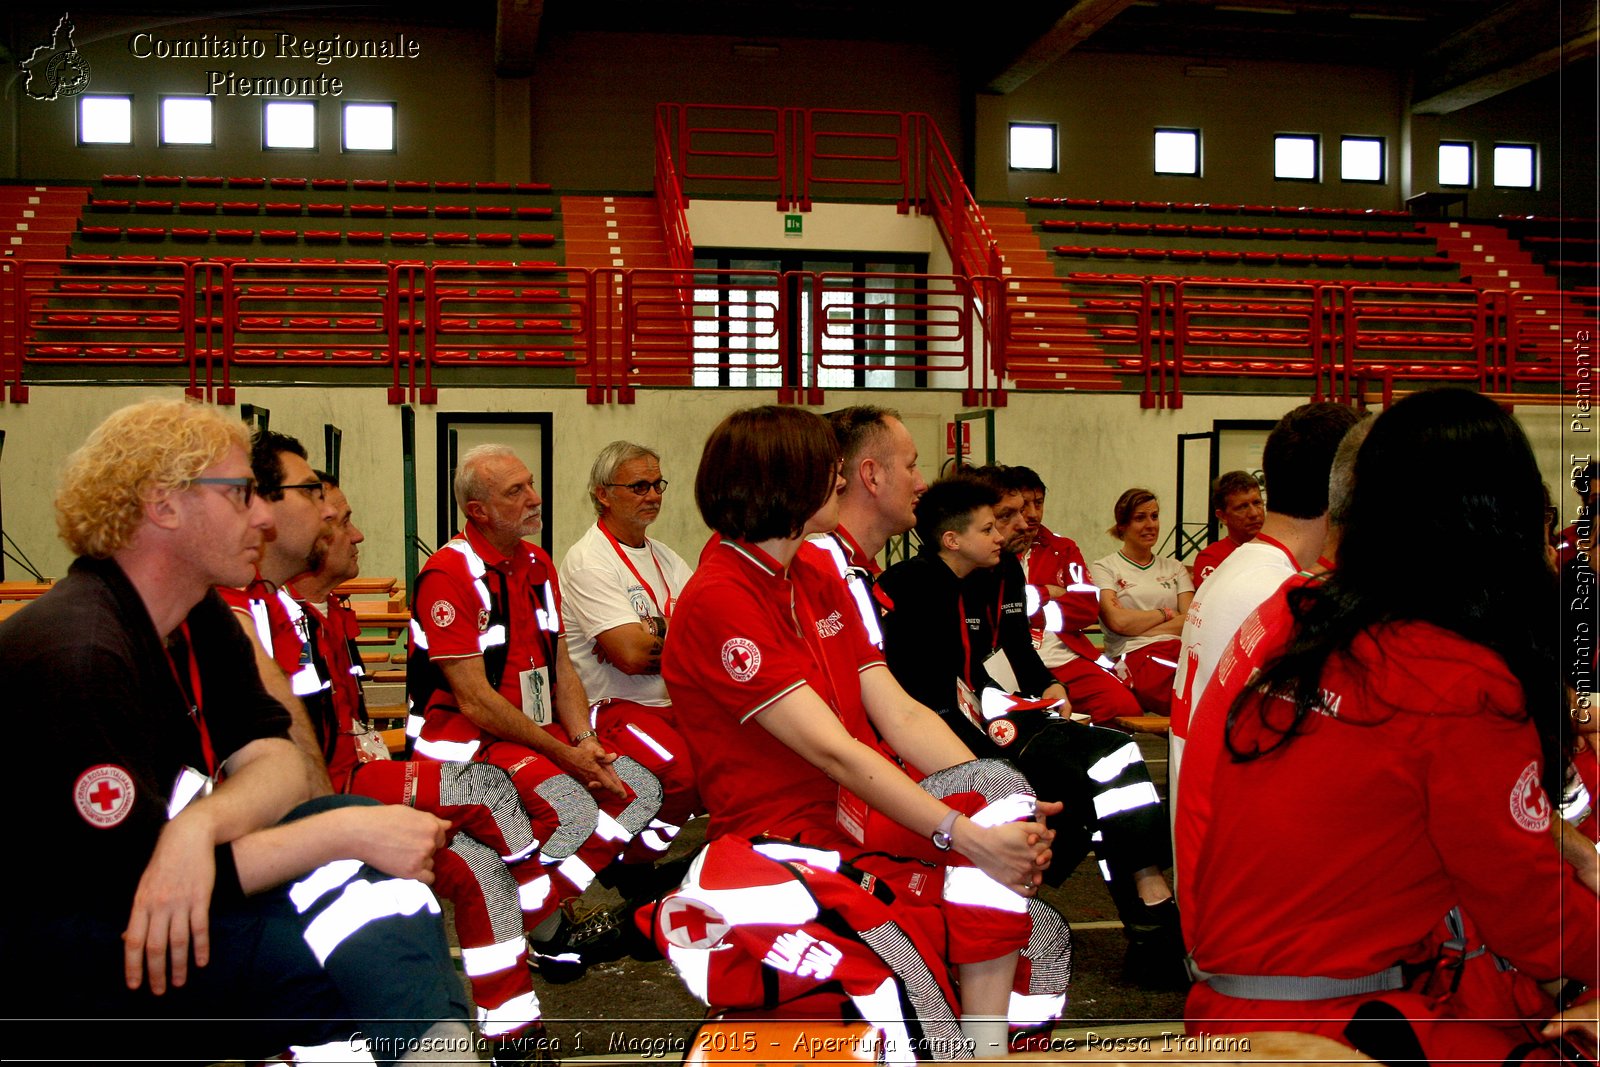 Camposcuola Ivrea 1 Maggio 2015 - Apertura campo - Croce Rossa Italiana- Comitato Regionale del Piemonte